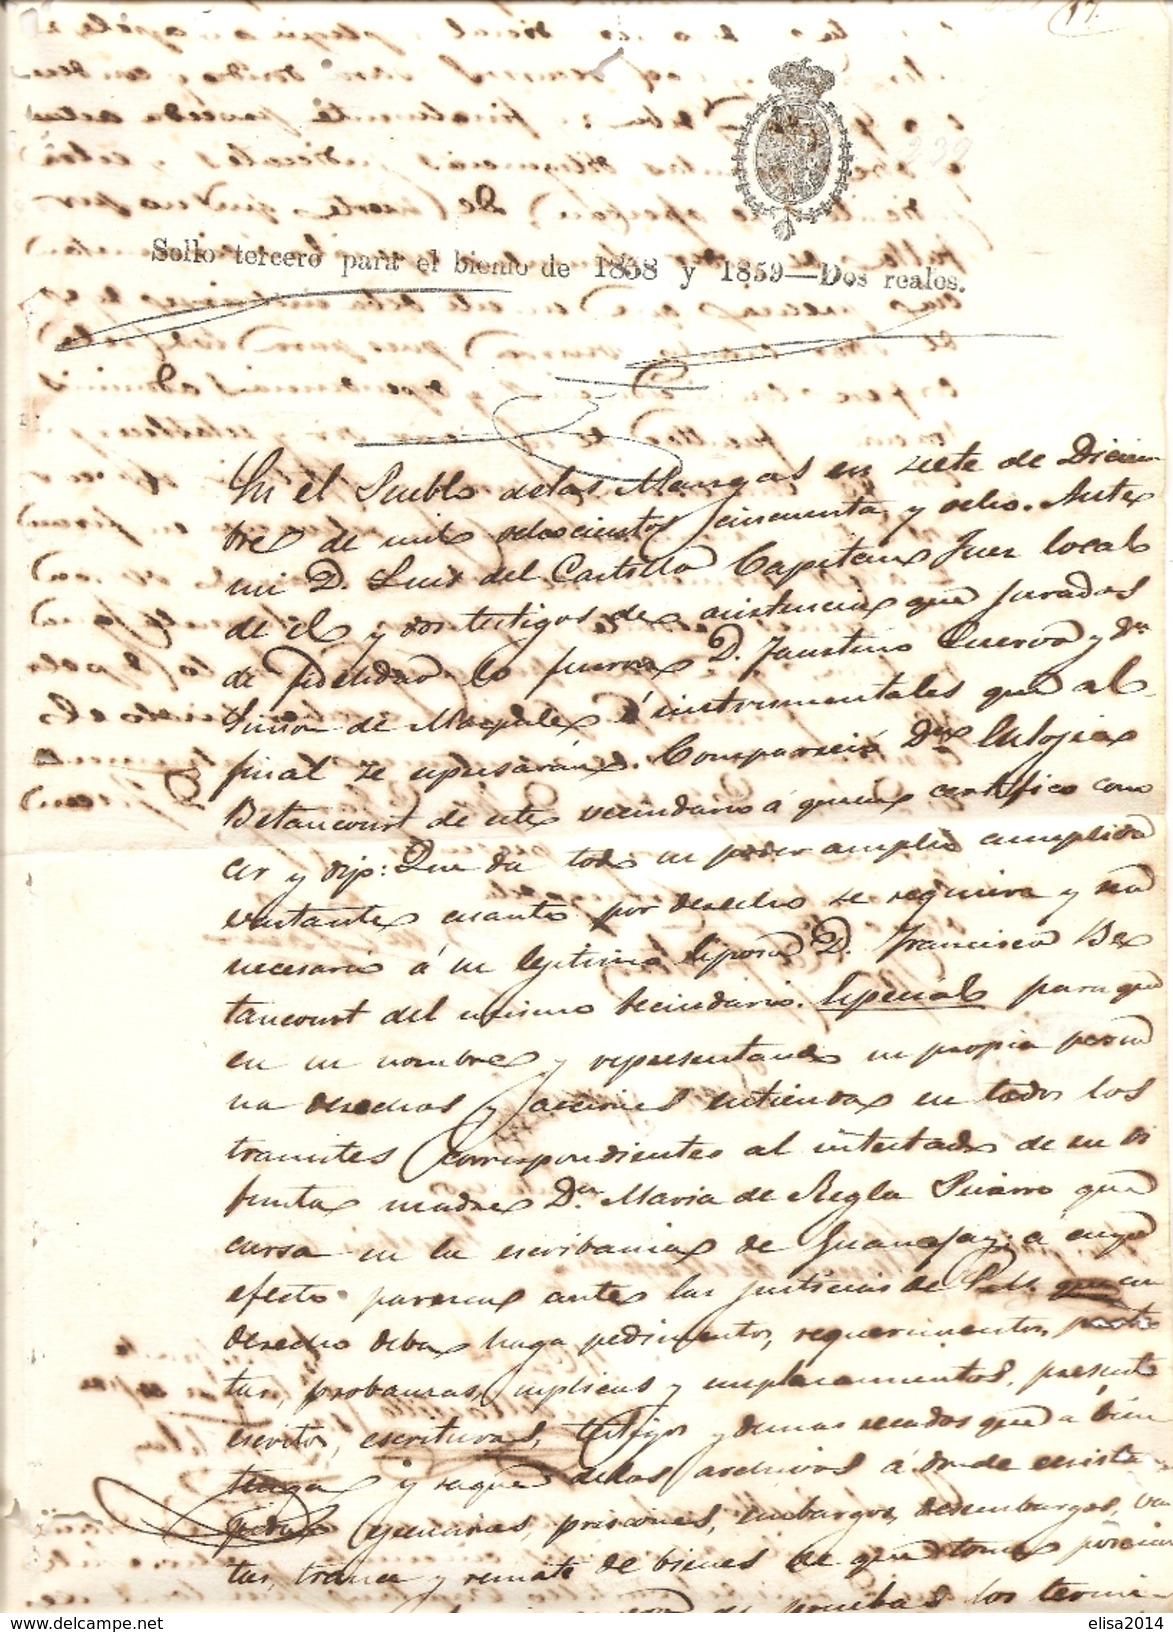 MANGAS SELLO TERCERO PARAET BIENO DE 1838 Y 1859 DOS REALOS LUIS DEL CASTILLO - Historical Documents